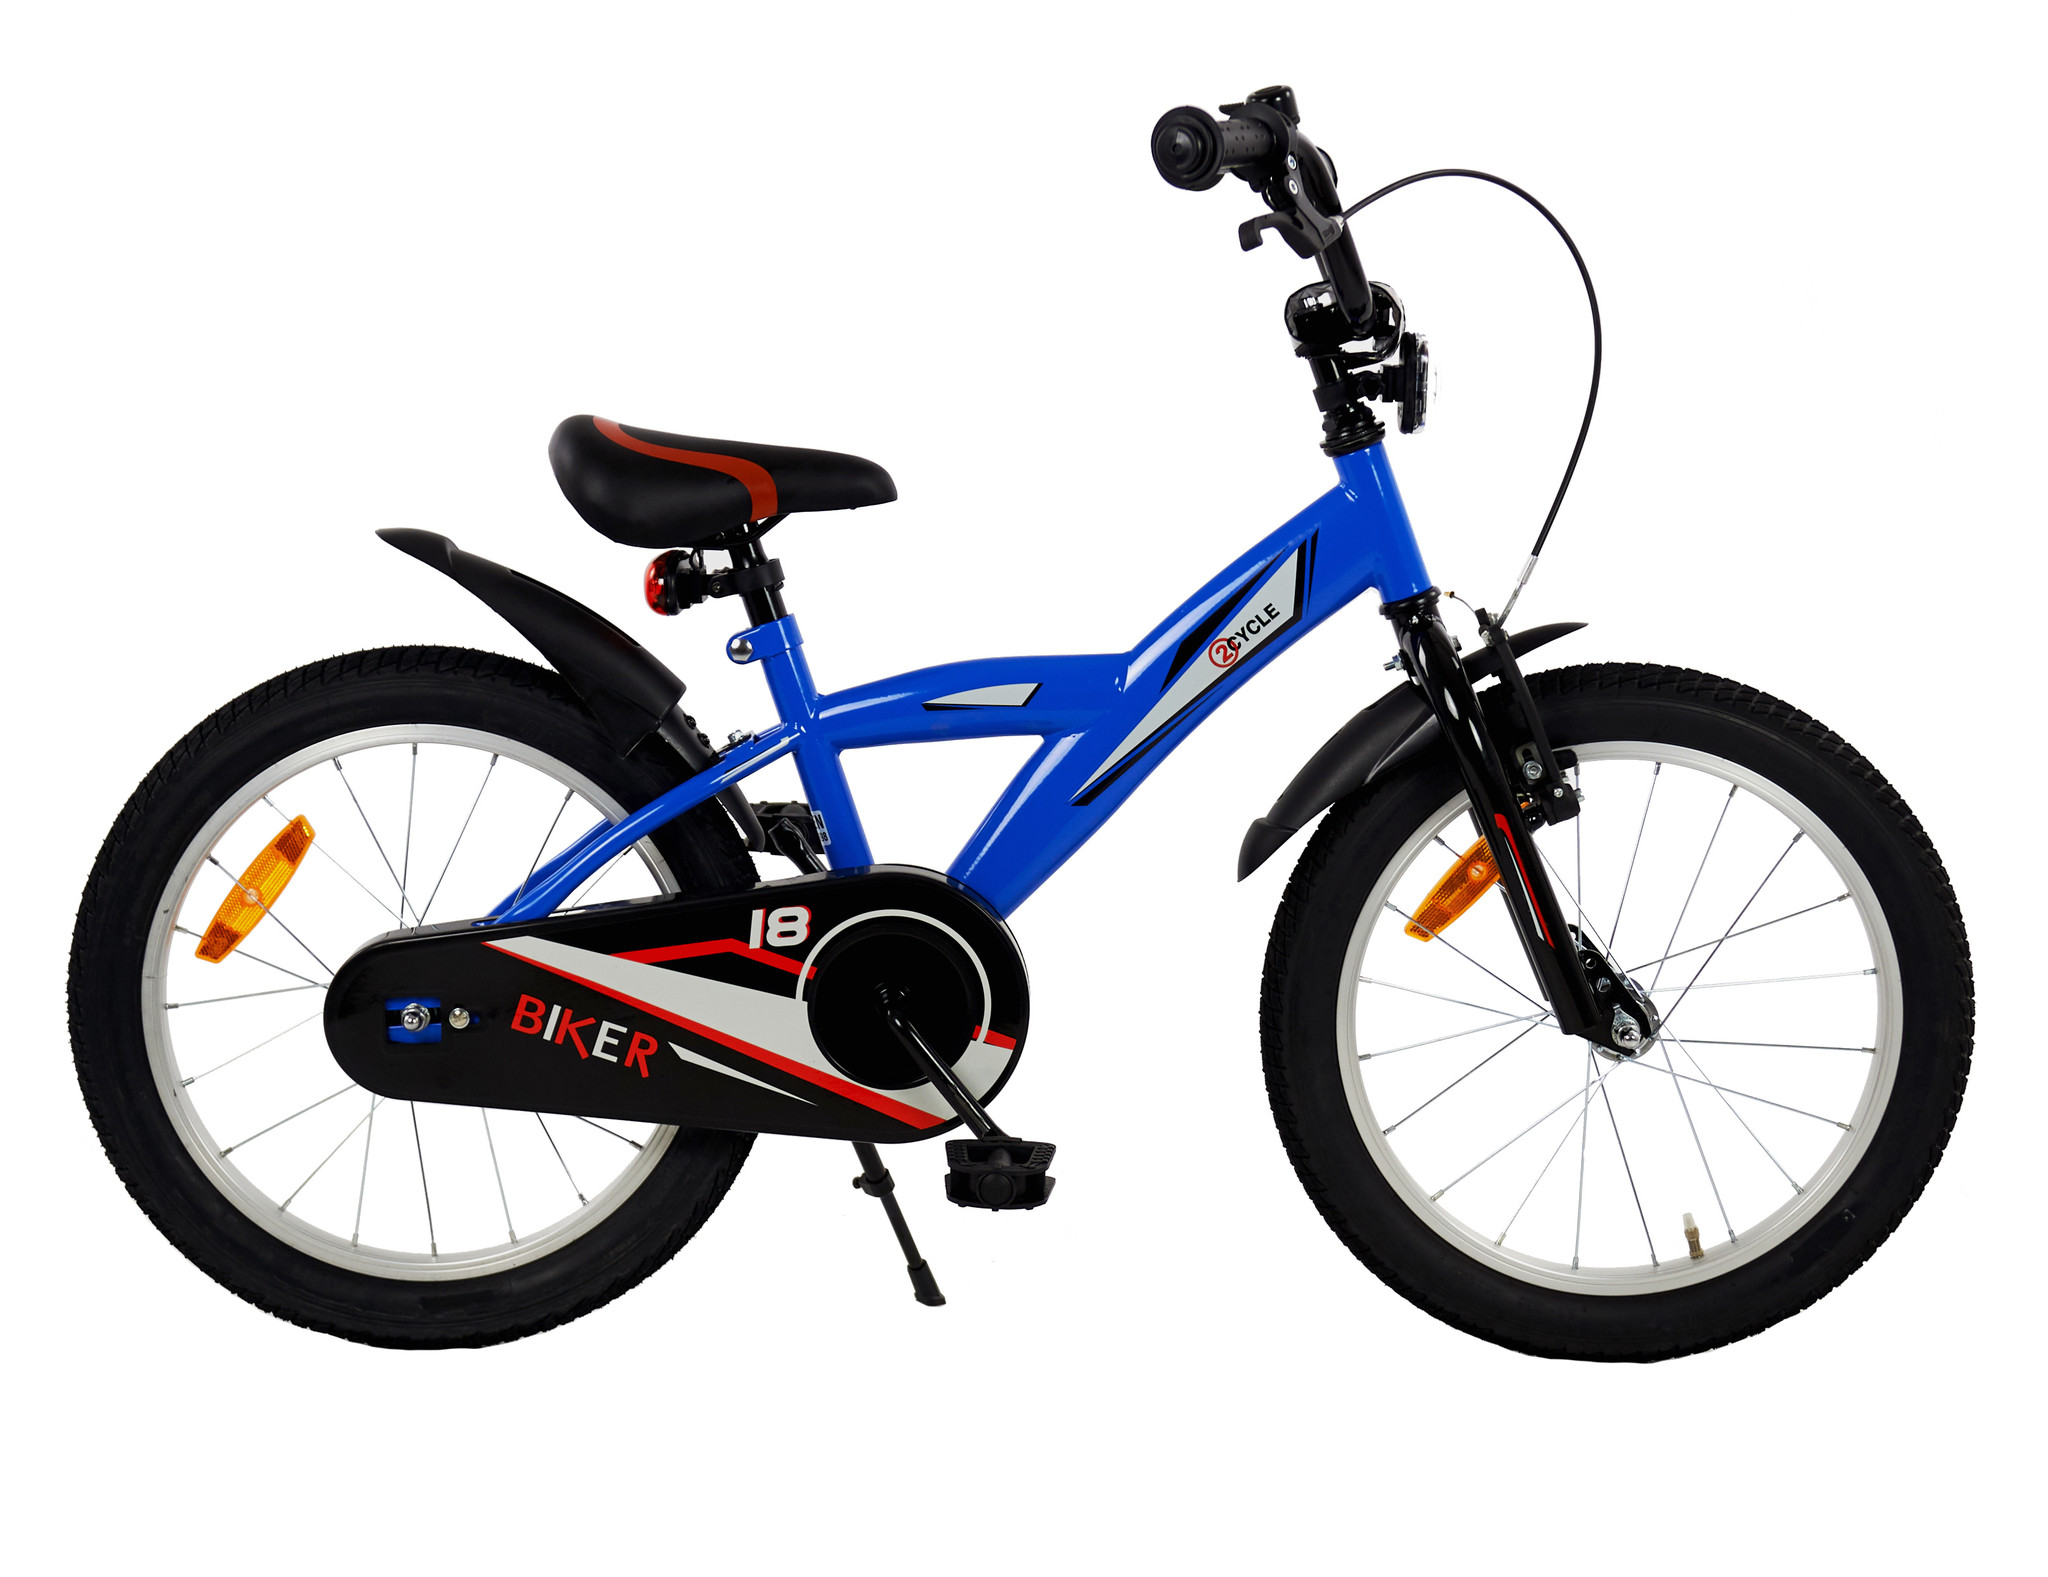 Wissen Landelijk Elektronisch Mooie 2Cycle Biker jongensfiets 18 inch direct online bestellen |  Prijskiller.nl